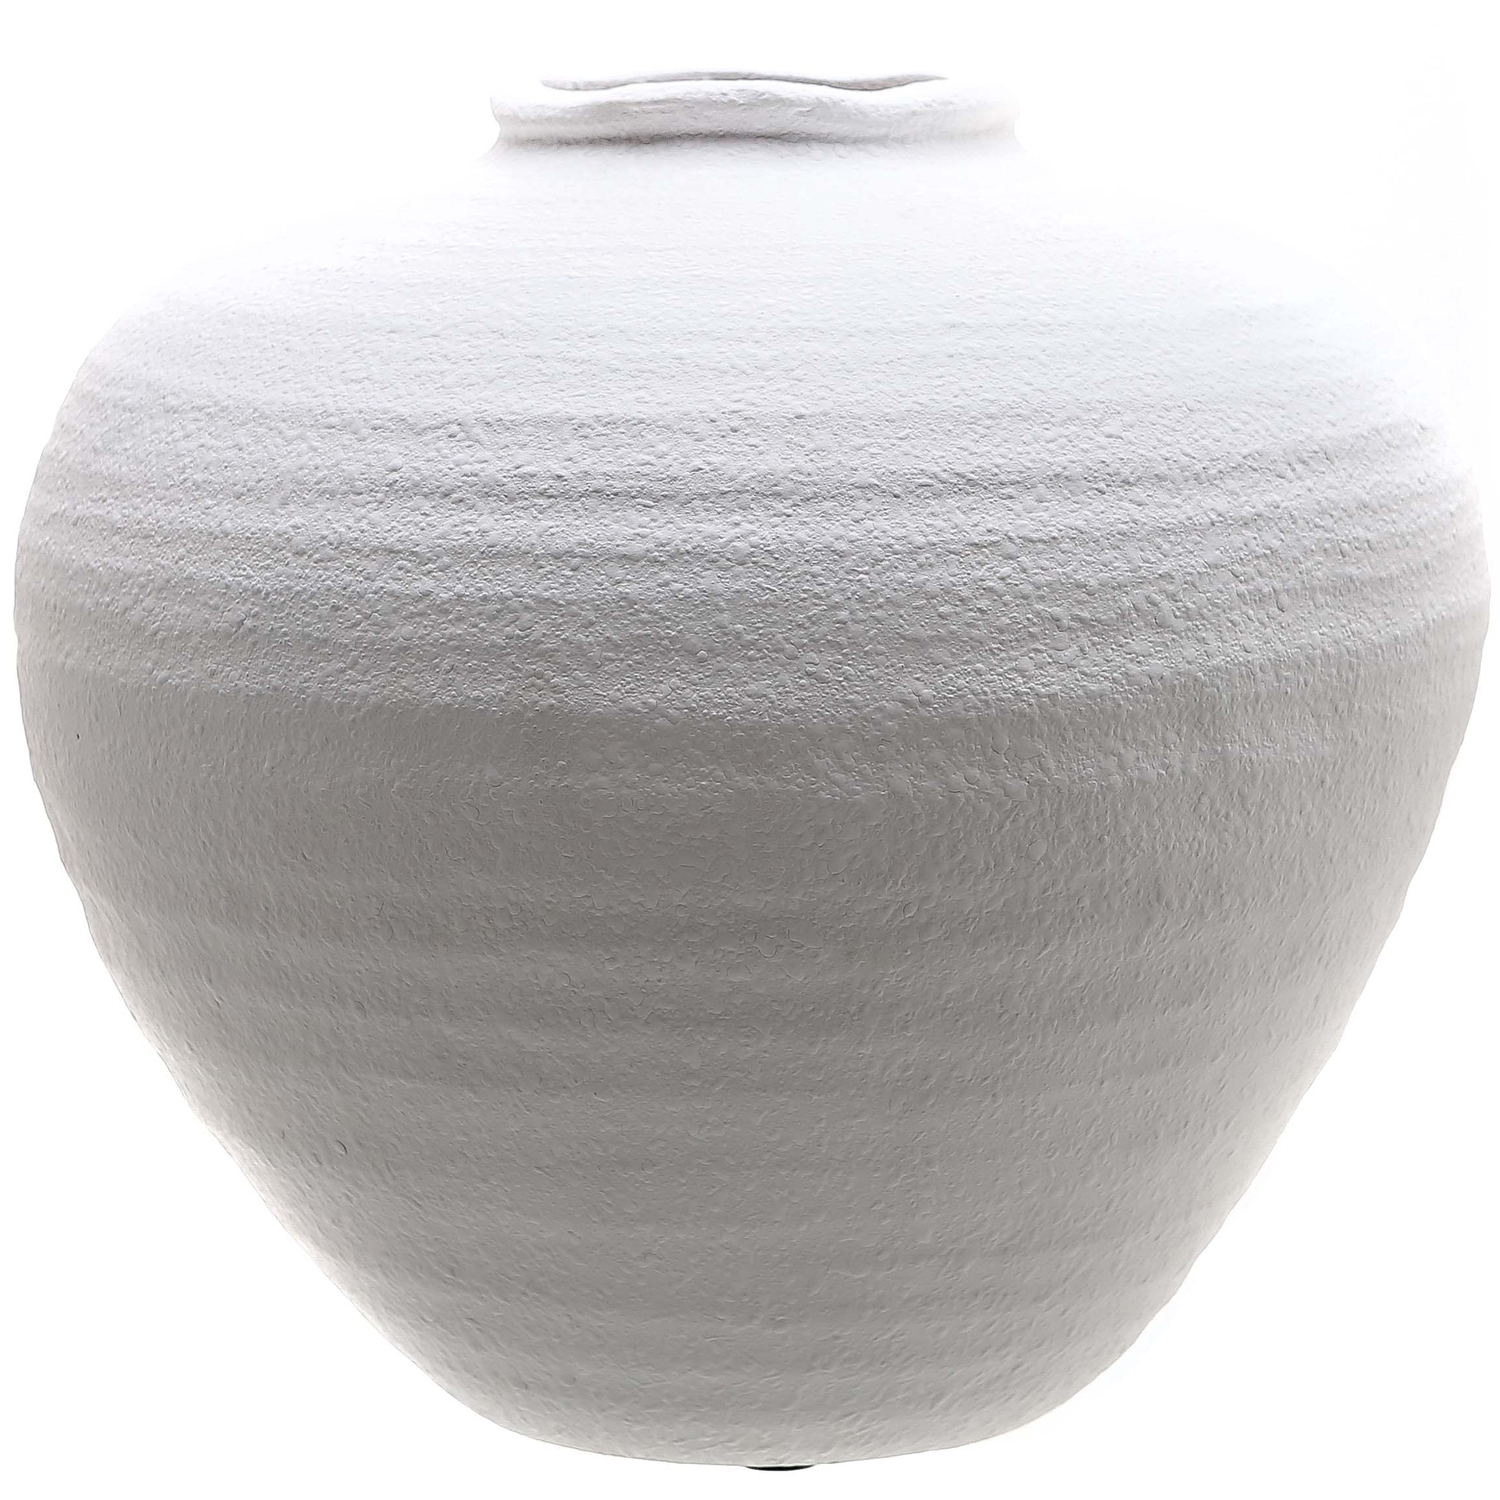 Regola Matt White Ceramic Vase - Image 1